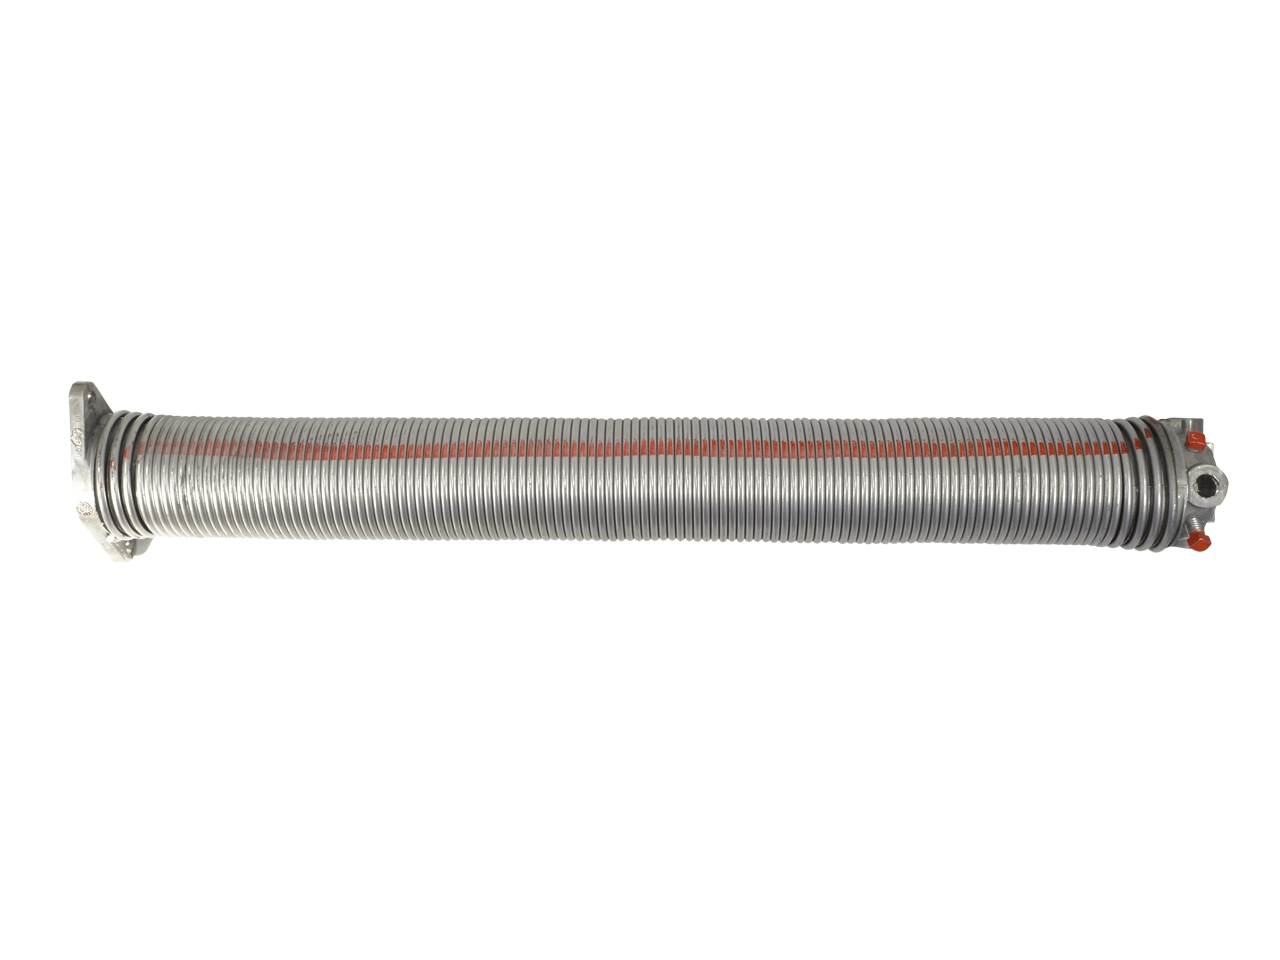 Torfeder, Innendurchmesser 95 mm, Drahtstärke 7 mm, Windung Links, mit Köpfen für Welle 25,4mm